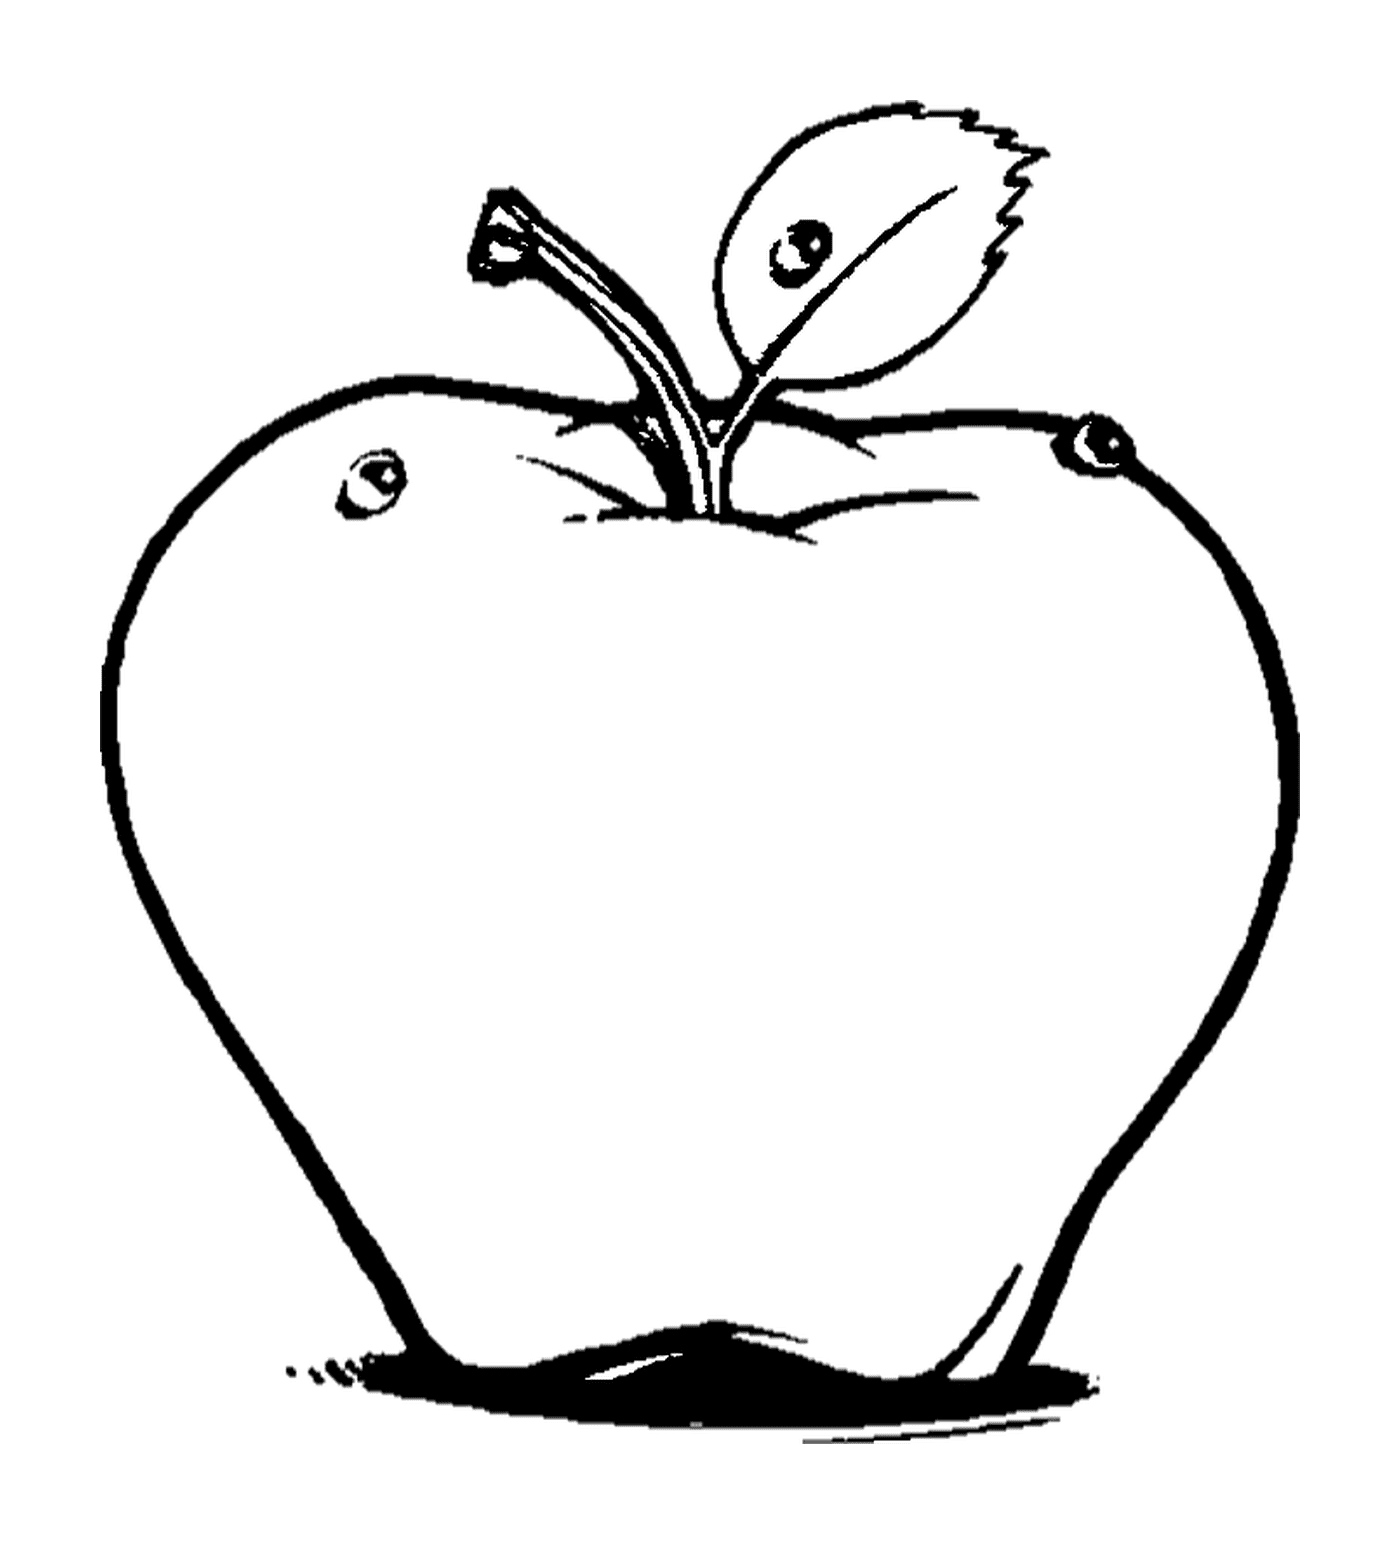  Яблоко нарисовано 